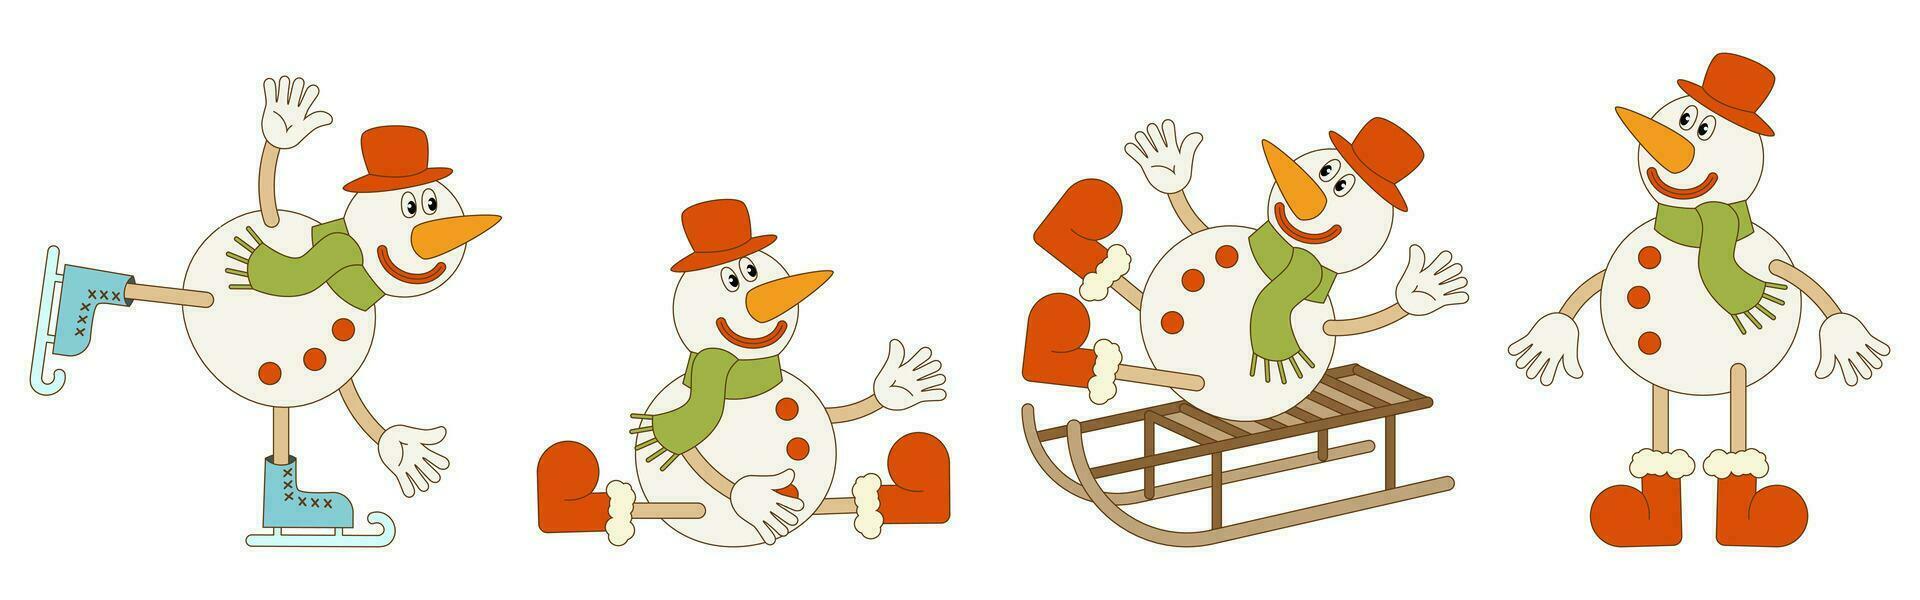 reeks van Kerstmis sneeuwmannen in verschillend poseert. vector illustratie in modieus groovy retro stijl. wit achtergrond.